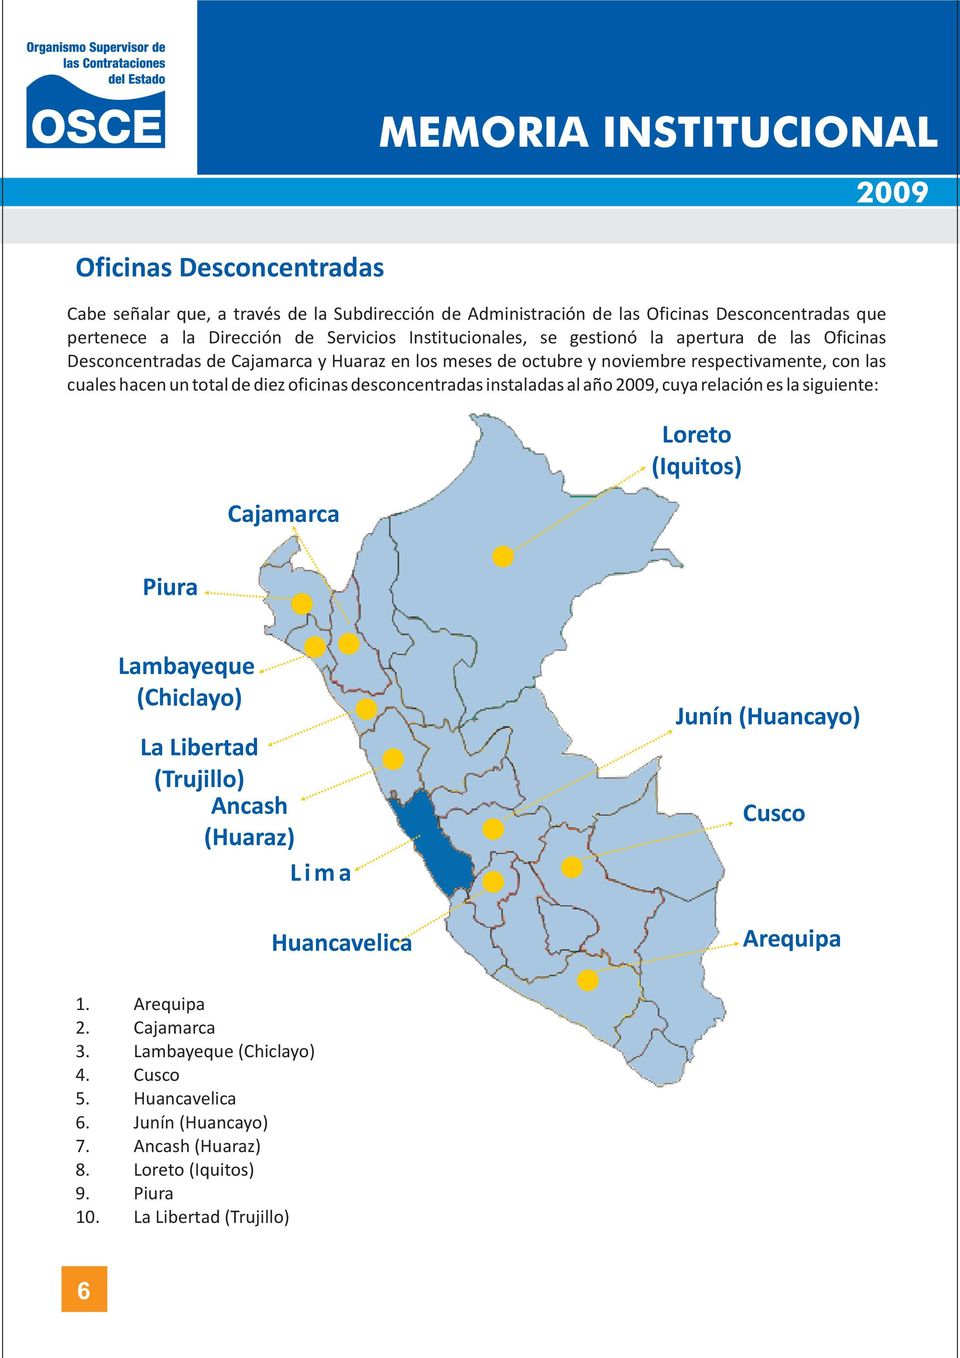 oficinas desconcentradas instaladas al año, cuya relación es la siguiente: Cajamarca Loreto (Iquitos) Piura Lambayeque (Chiclayo) La Libertad (Trujillo) Ancash (Huaraz) Lima Huancavelica